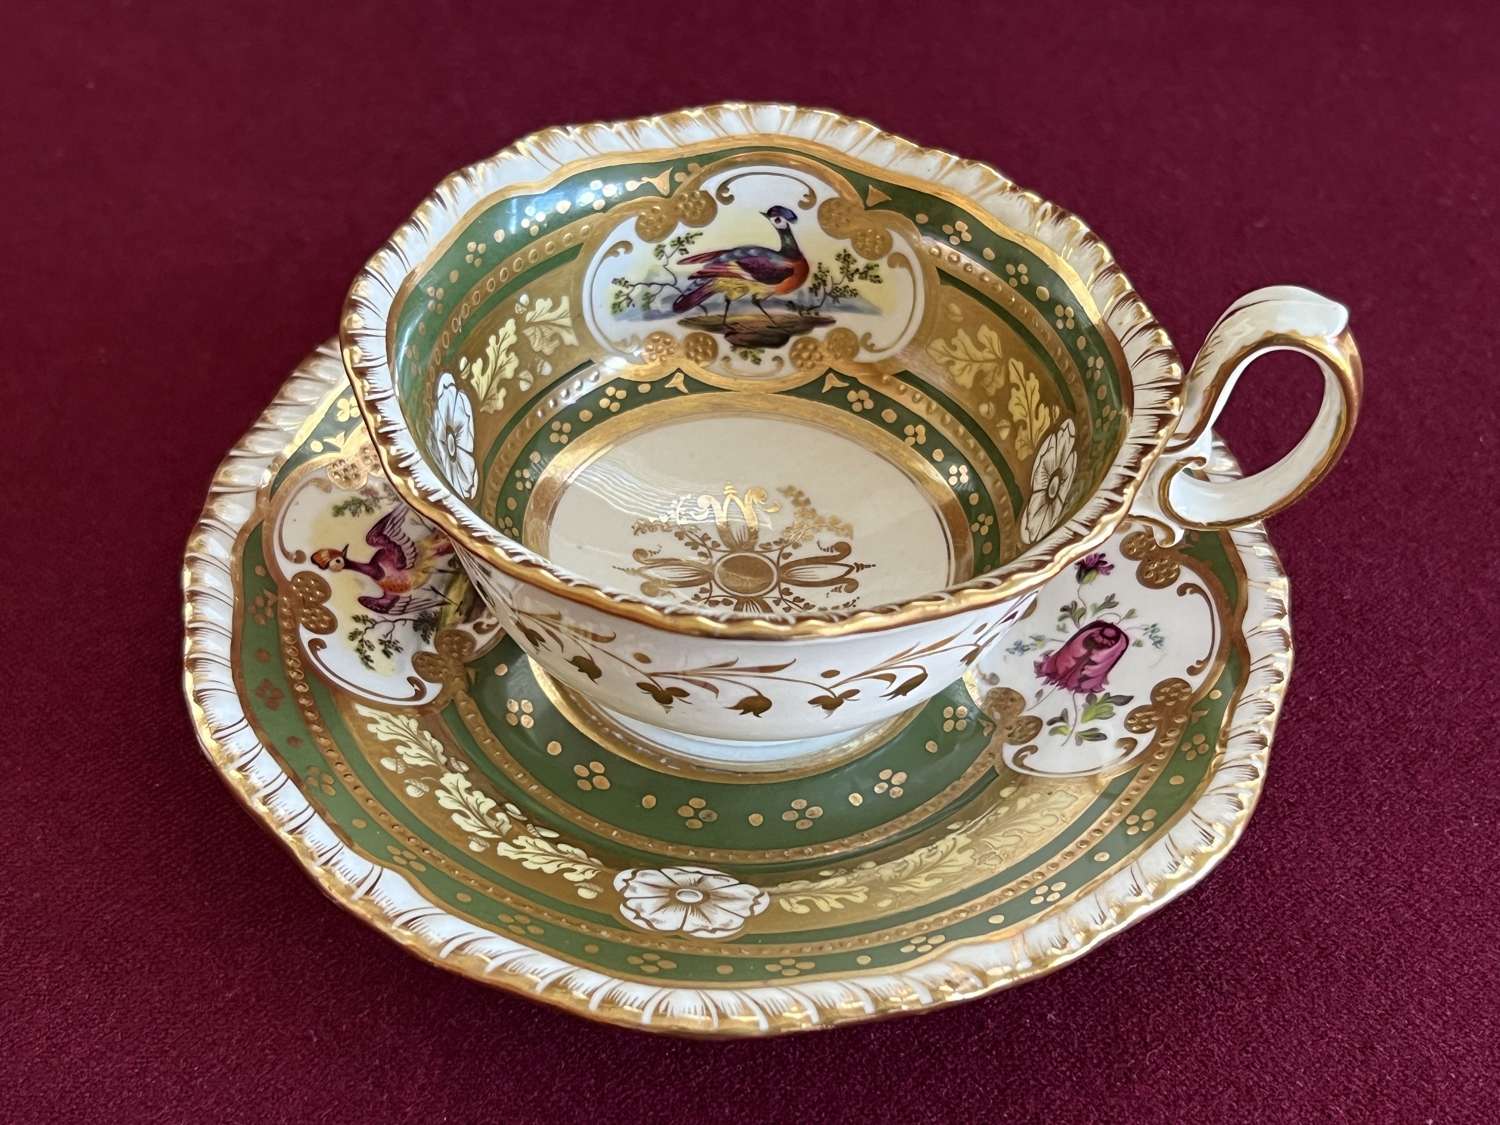 A H & R Daniel Porcelain Tea Cup & Saucer Second Gadroon Pattern 4069